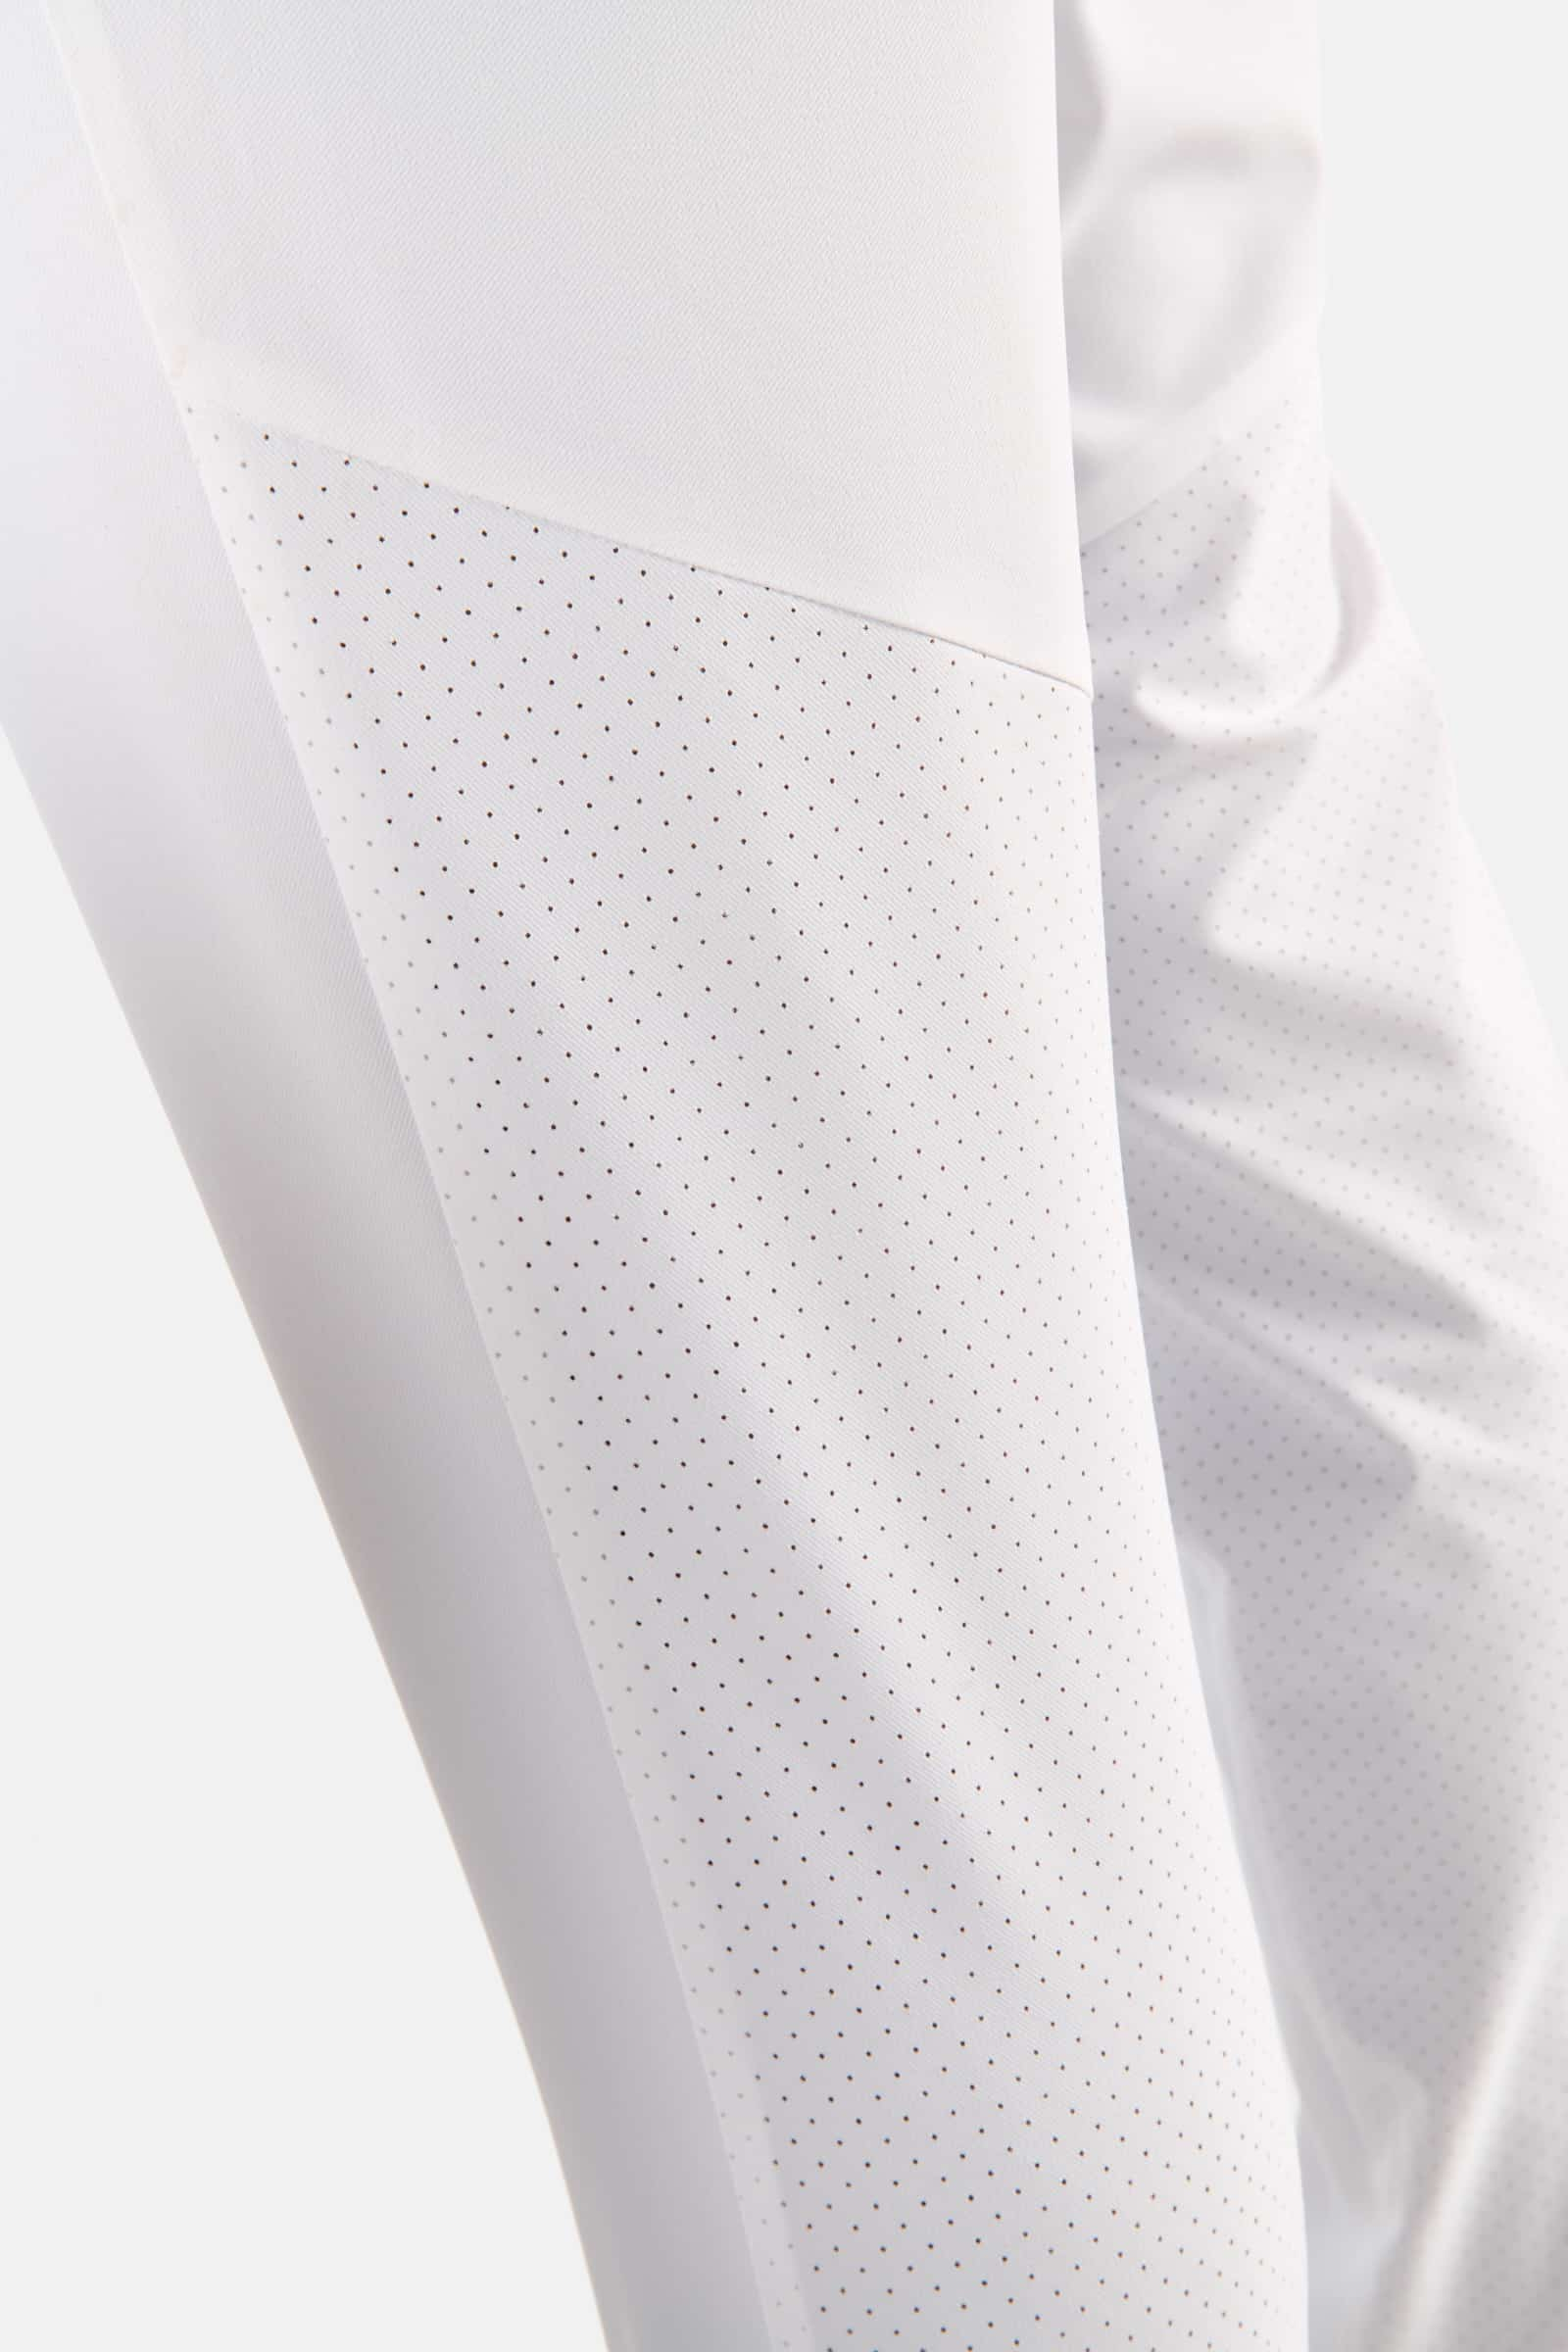 TECH PANTS - WHITE - Hydrogen - Luxury Sportwear